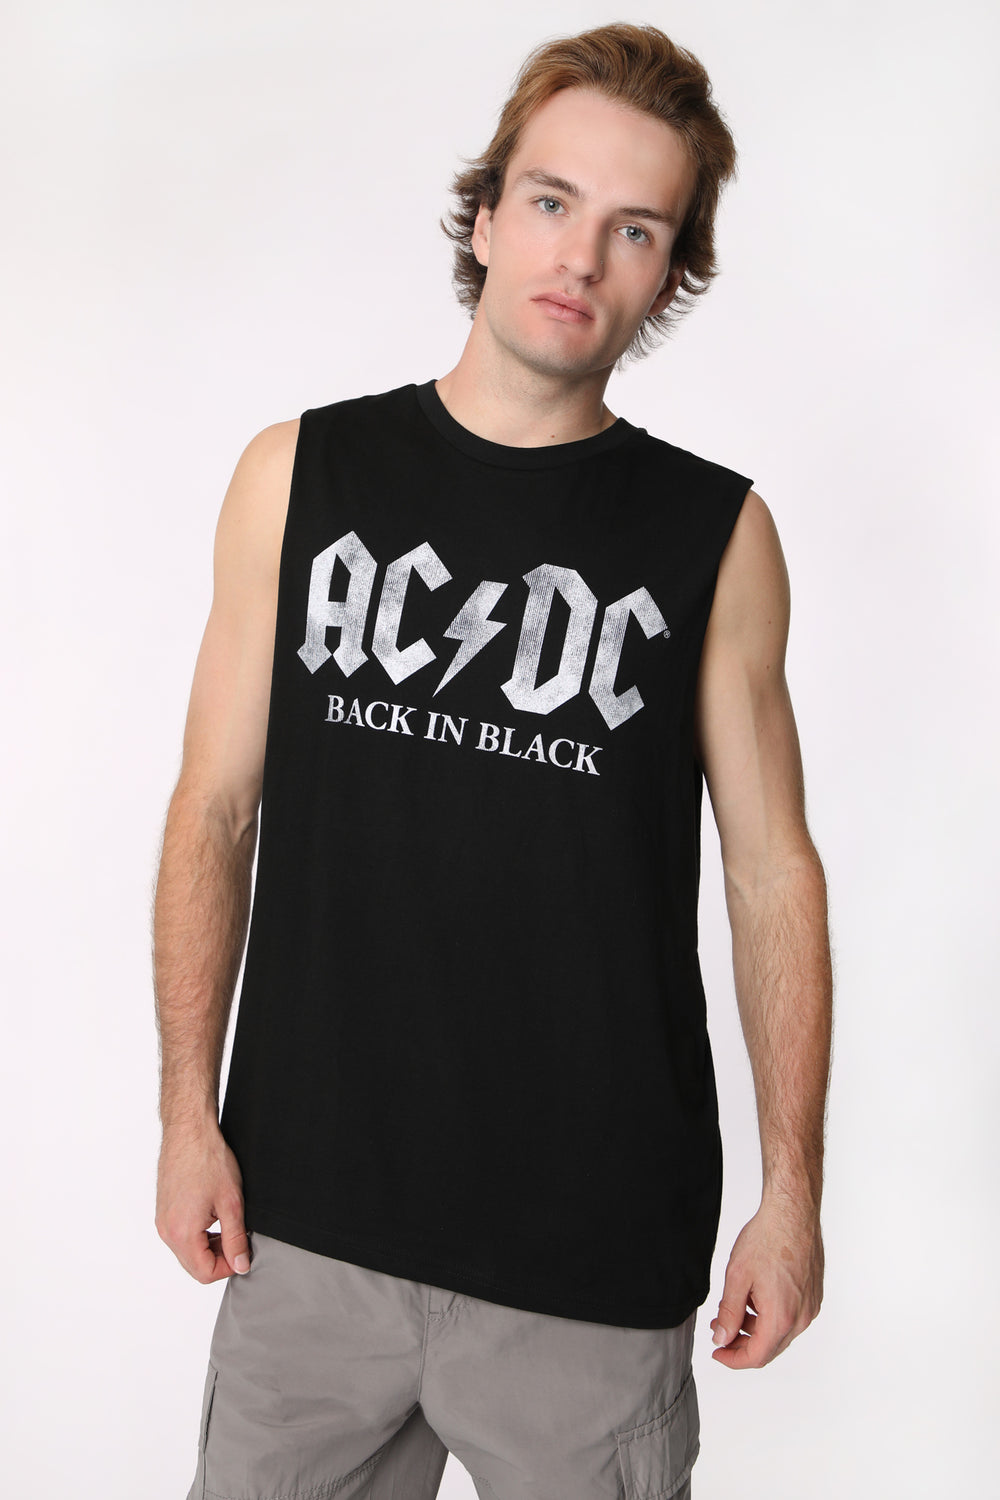 Camisole Imprimée AC/DC Homme Camisole Imprimée AC/DC Homme